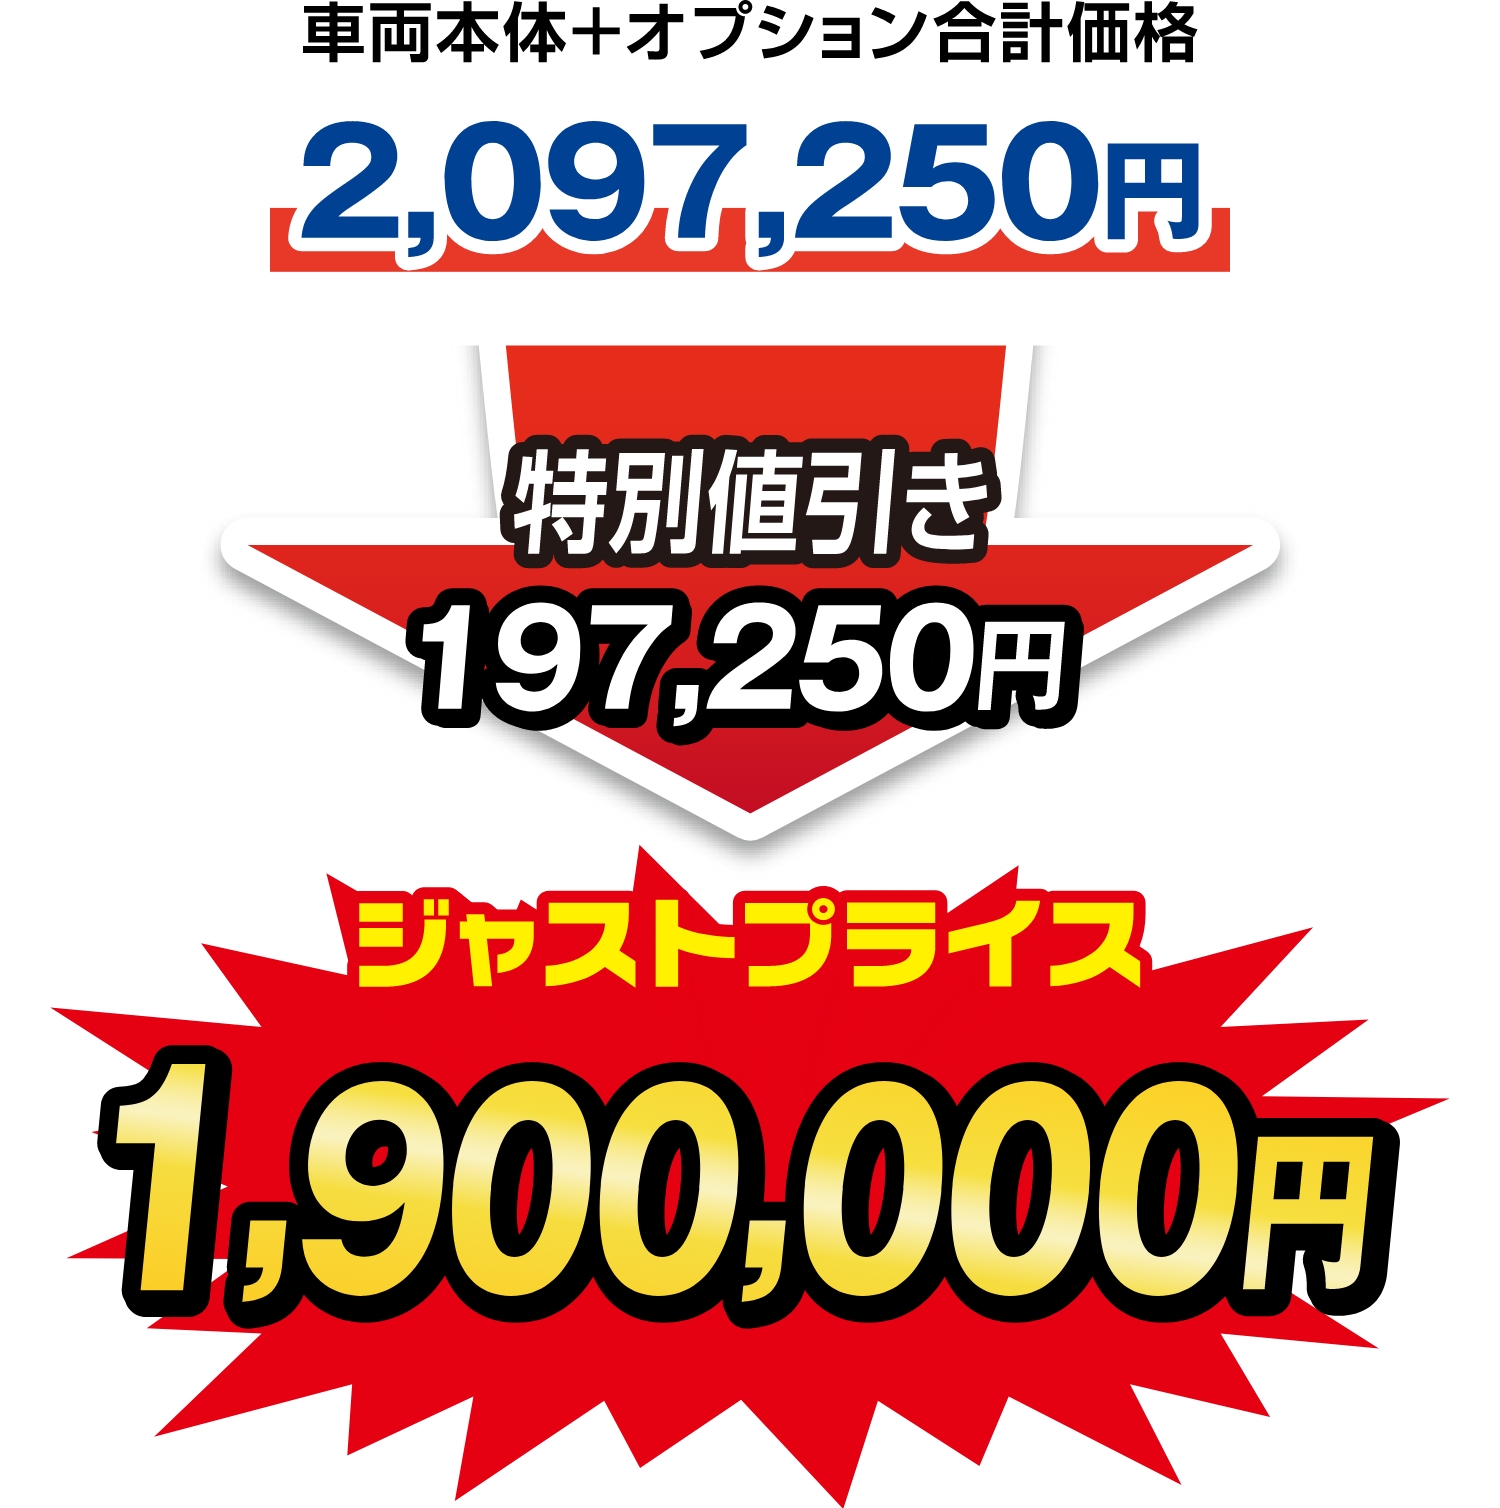 ジャストプライス1,900,000円